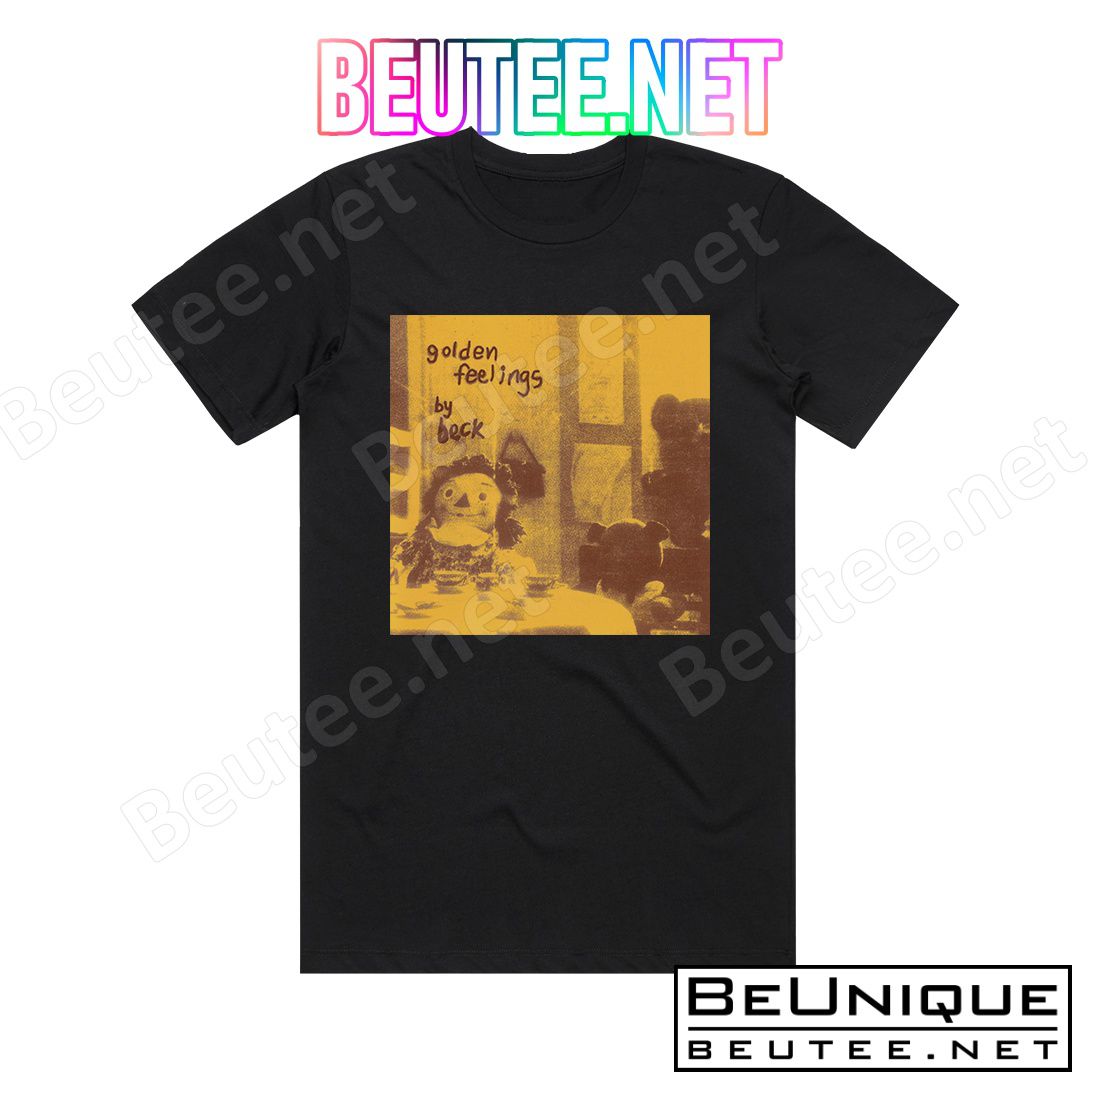 Beck Golden Feelings 1 Album Cover T-Shirt